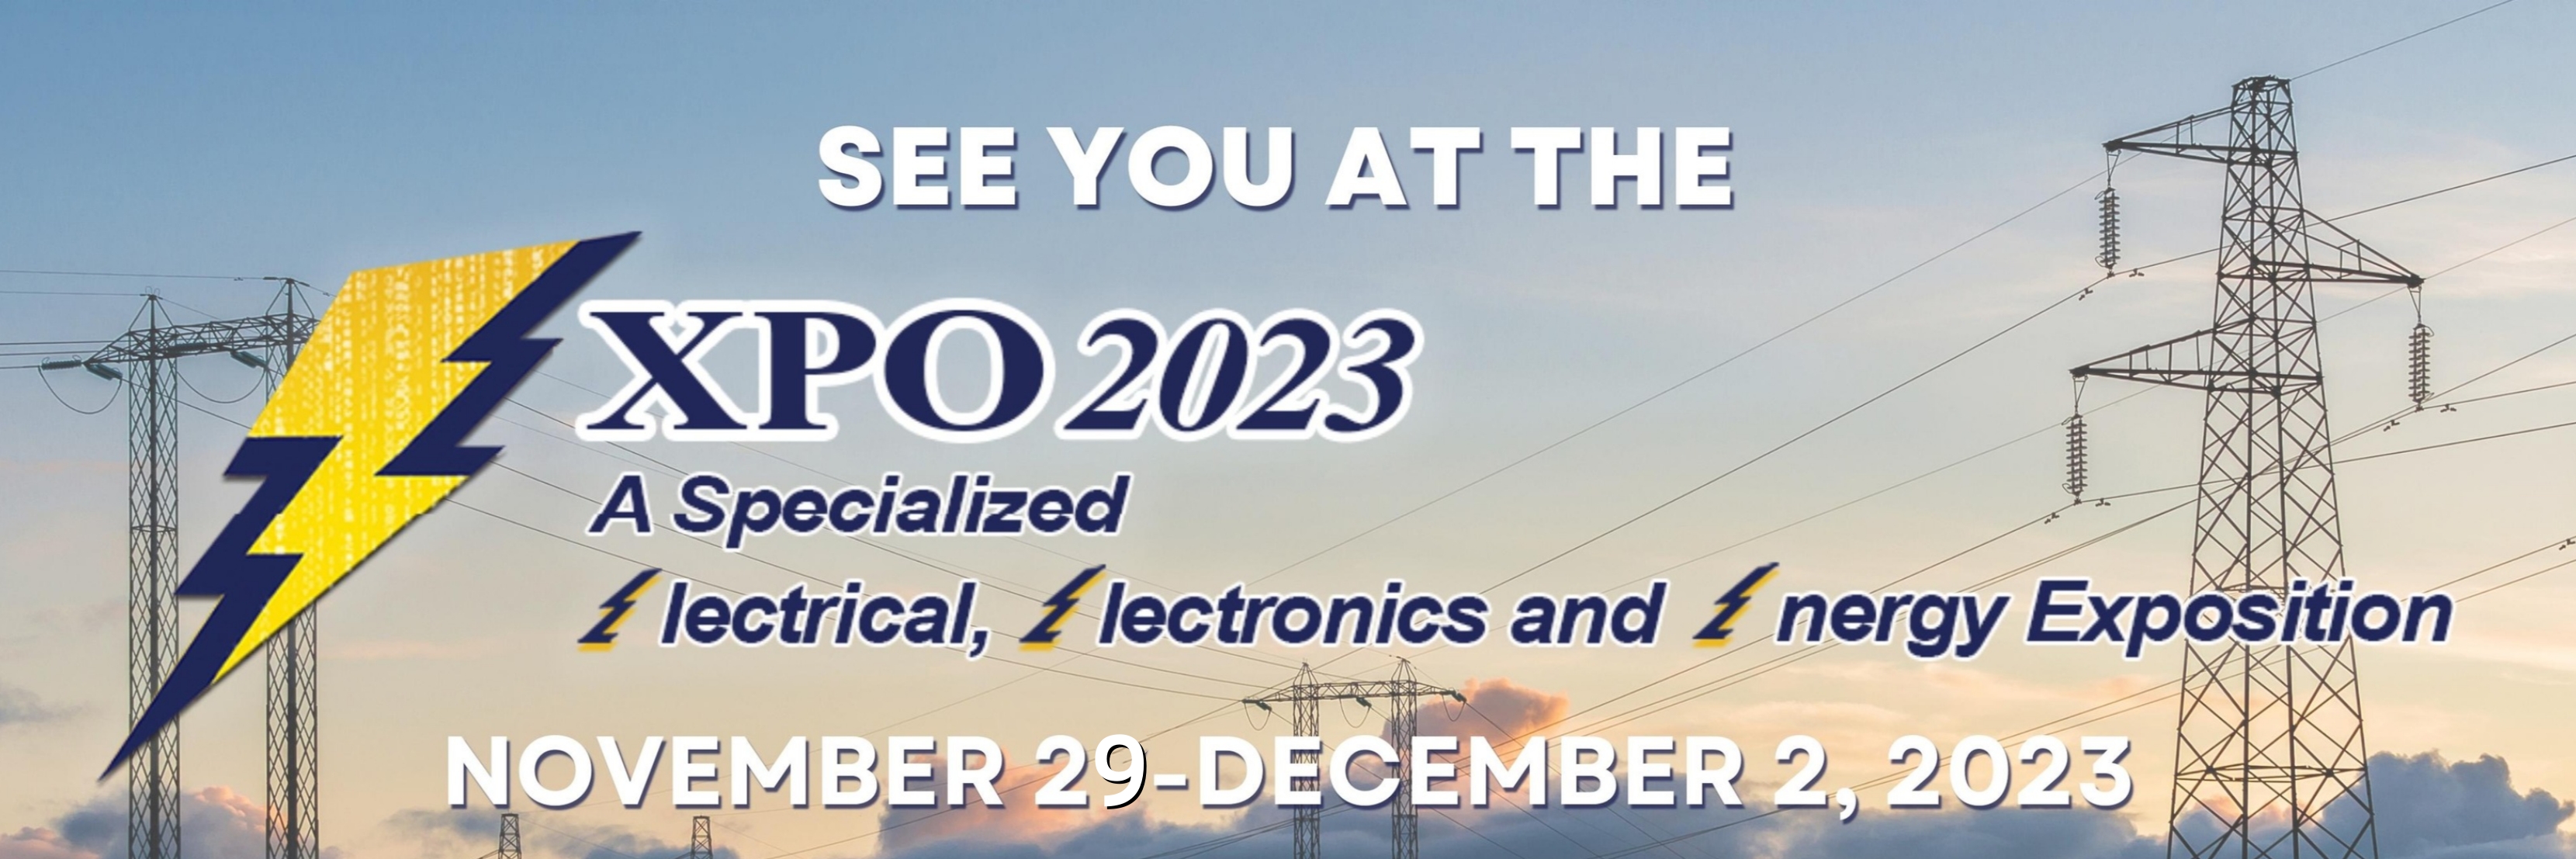 Uitnodiging voor 3E XPO 2023 in Manilla, Filipijnen